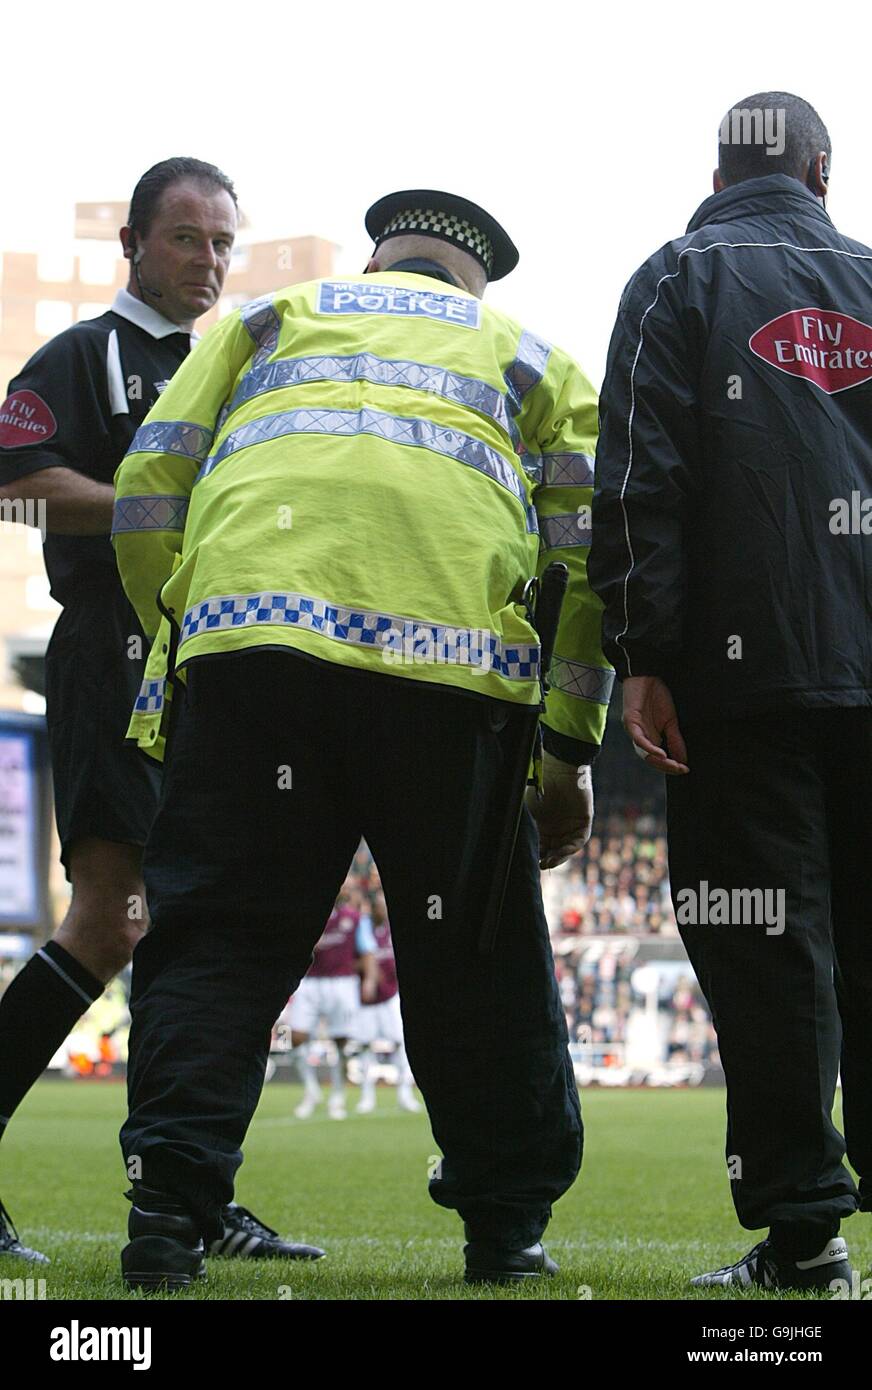 Fútbol - Fa Barclays Premiership - West Ham United contra Arsenal - Upton Park. Un oficial de policía escoge el objeto que fue lanzado de la multitud golpeando a Robin van Persie del Arsenal Foto de stock